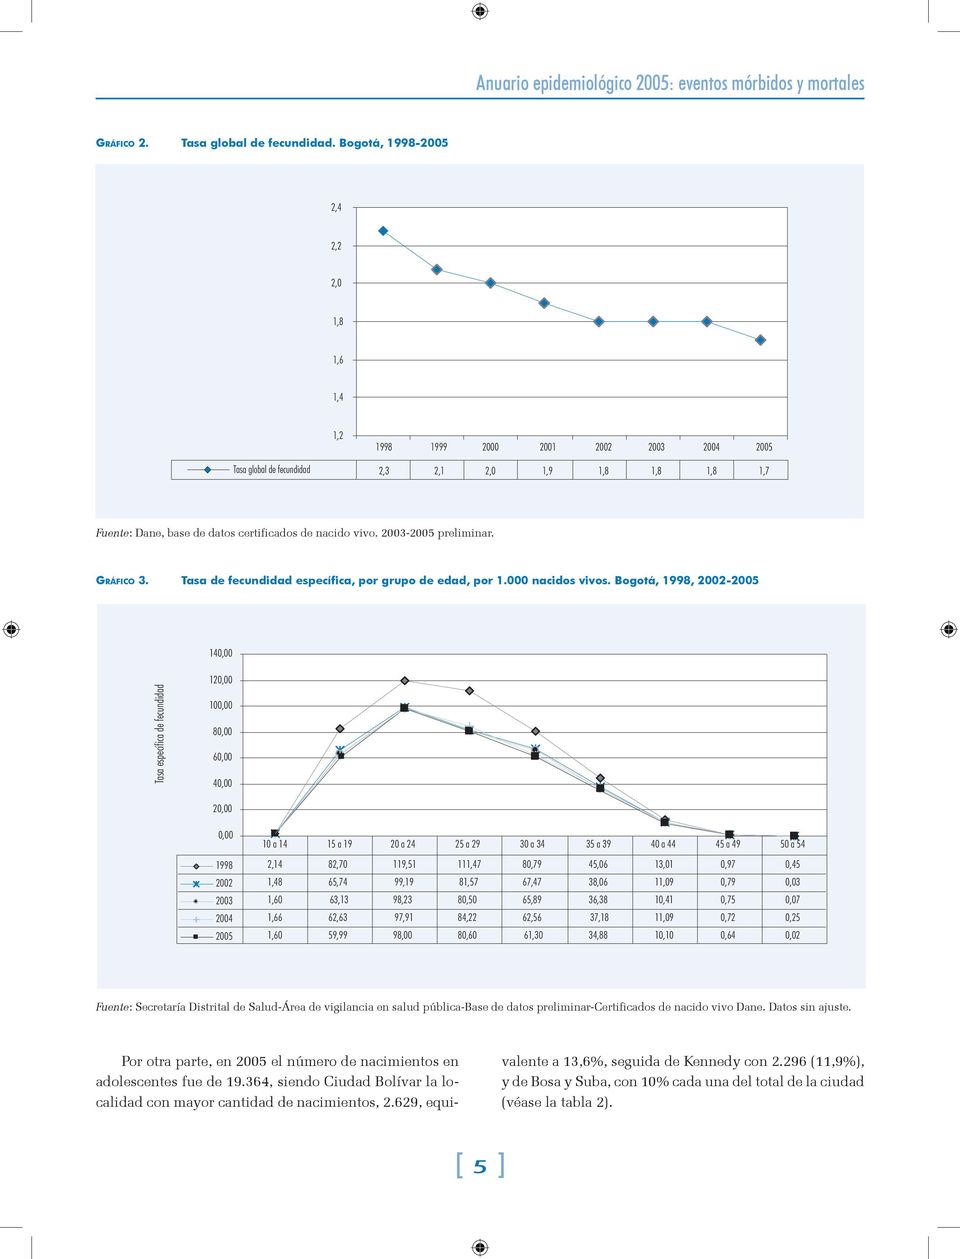 2003-2005 preliminar. Gráfico 3. Tasa de fecundidad específica, por grupo de edad, por 1.000 nacidos vivos.